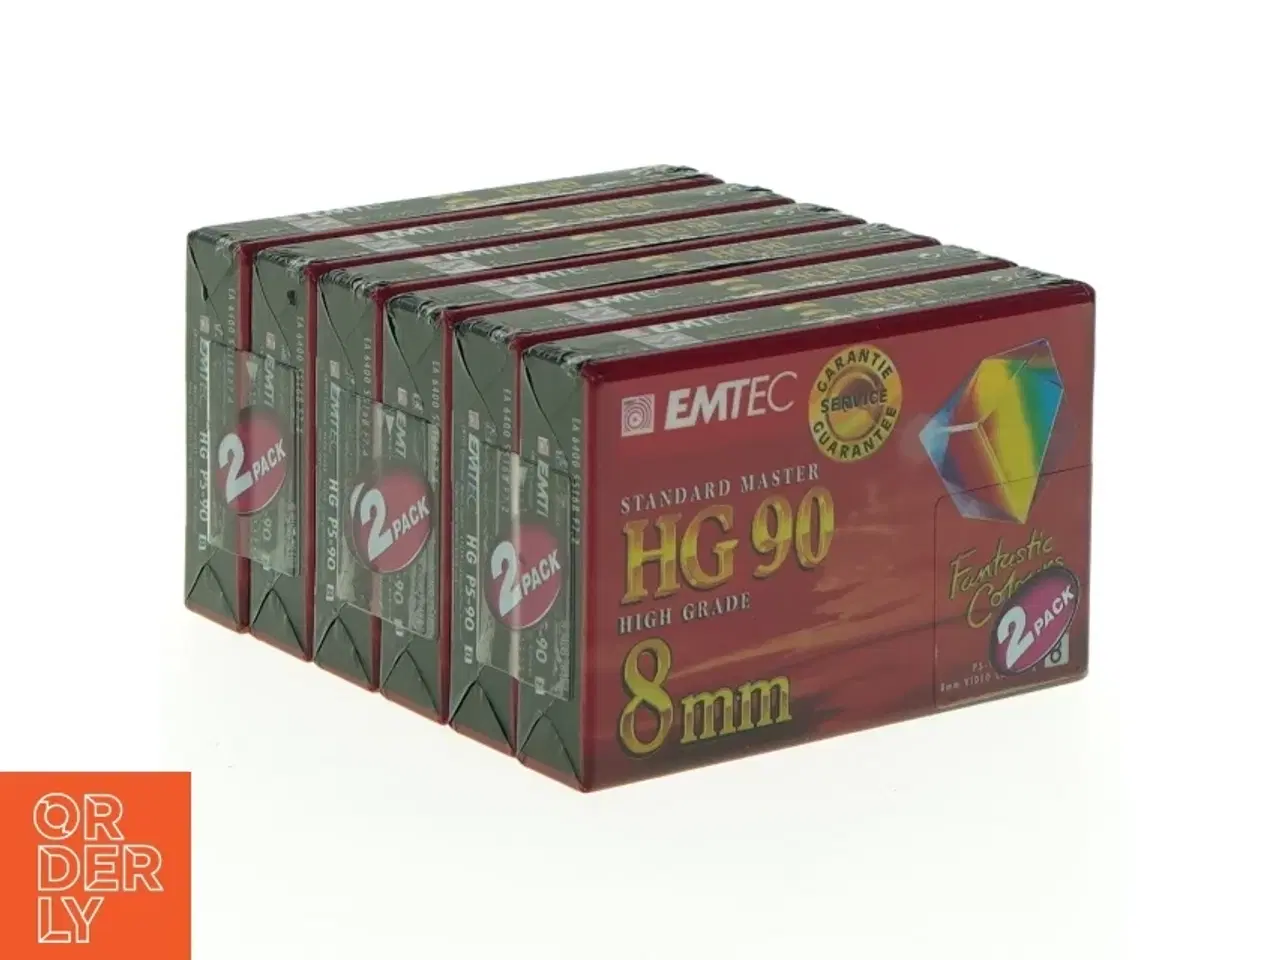 Billede 1 - EMTEC Standard Master HG90 Videobånd fra Emtec (str. Hg 90 8 mm)